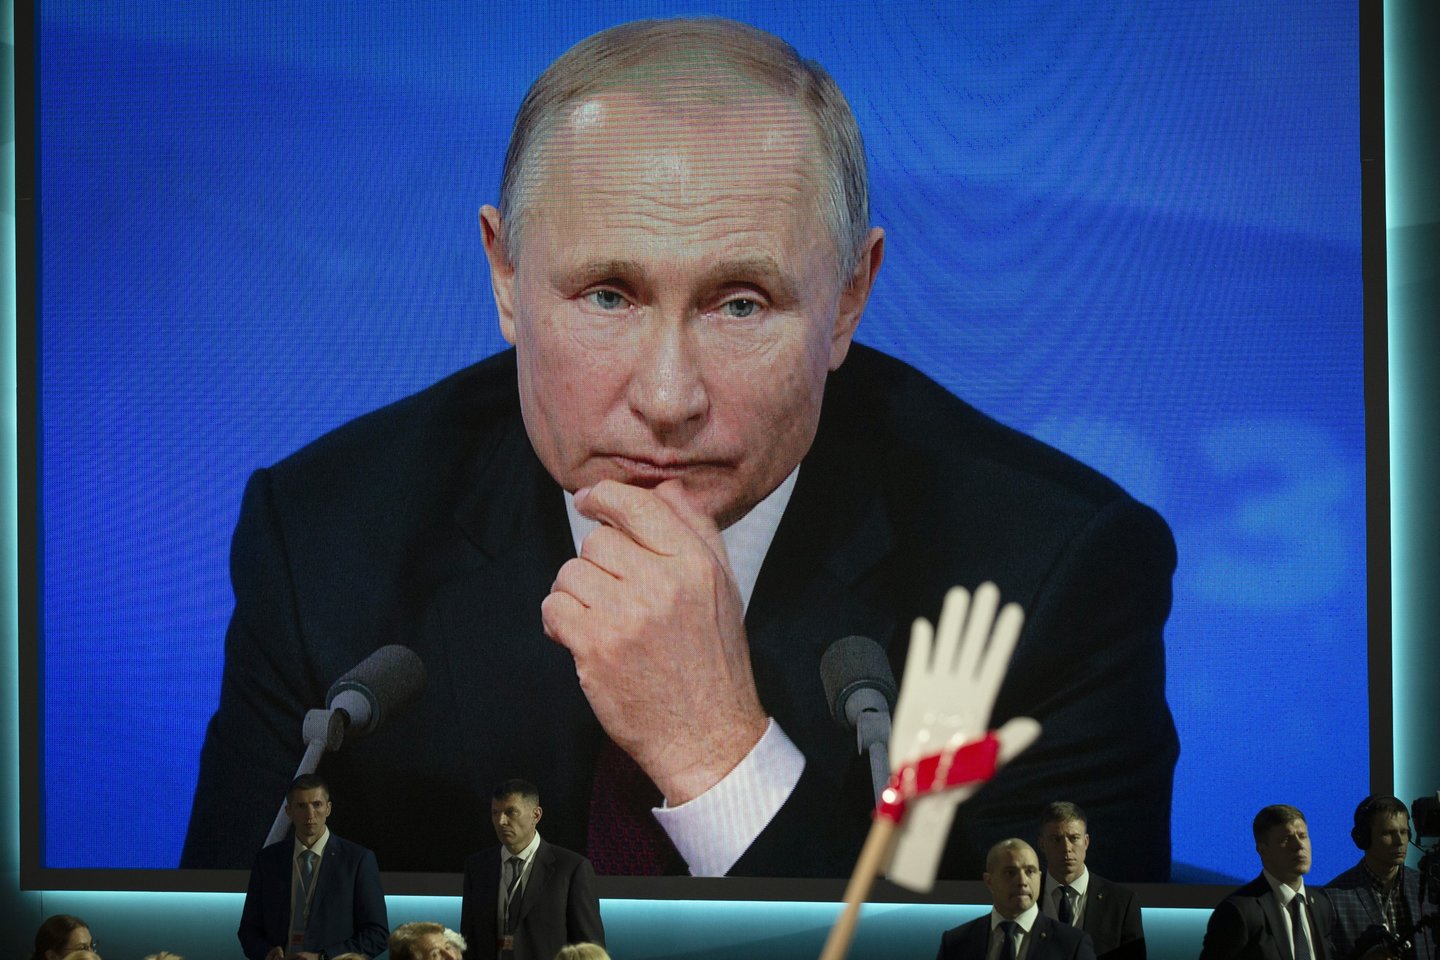  Rusijos prezidentas Vladimiras Putinas pripažino, kad Rusijoje egzistuoja dopingo problema<br> AP nuotr.